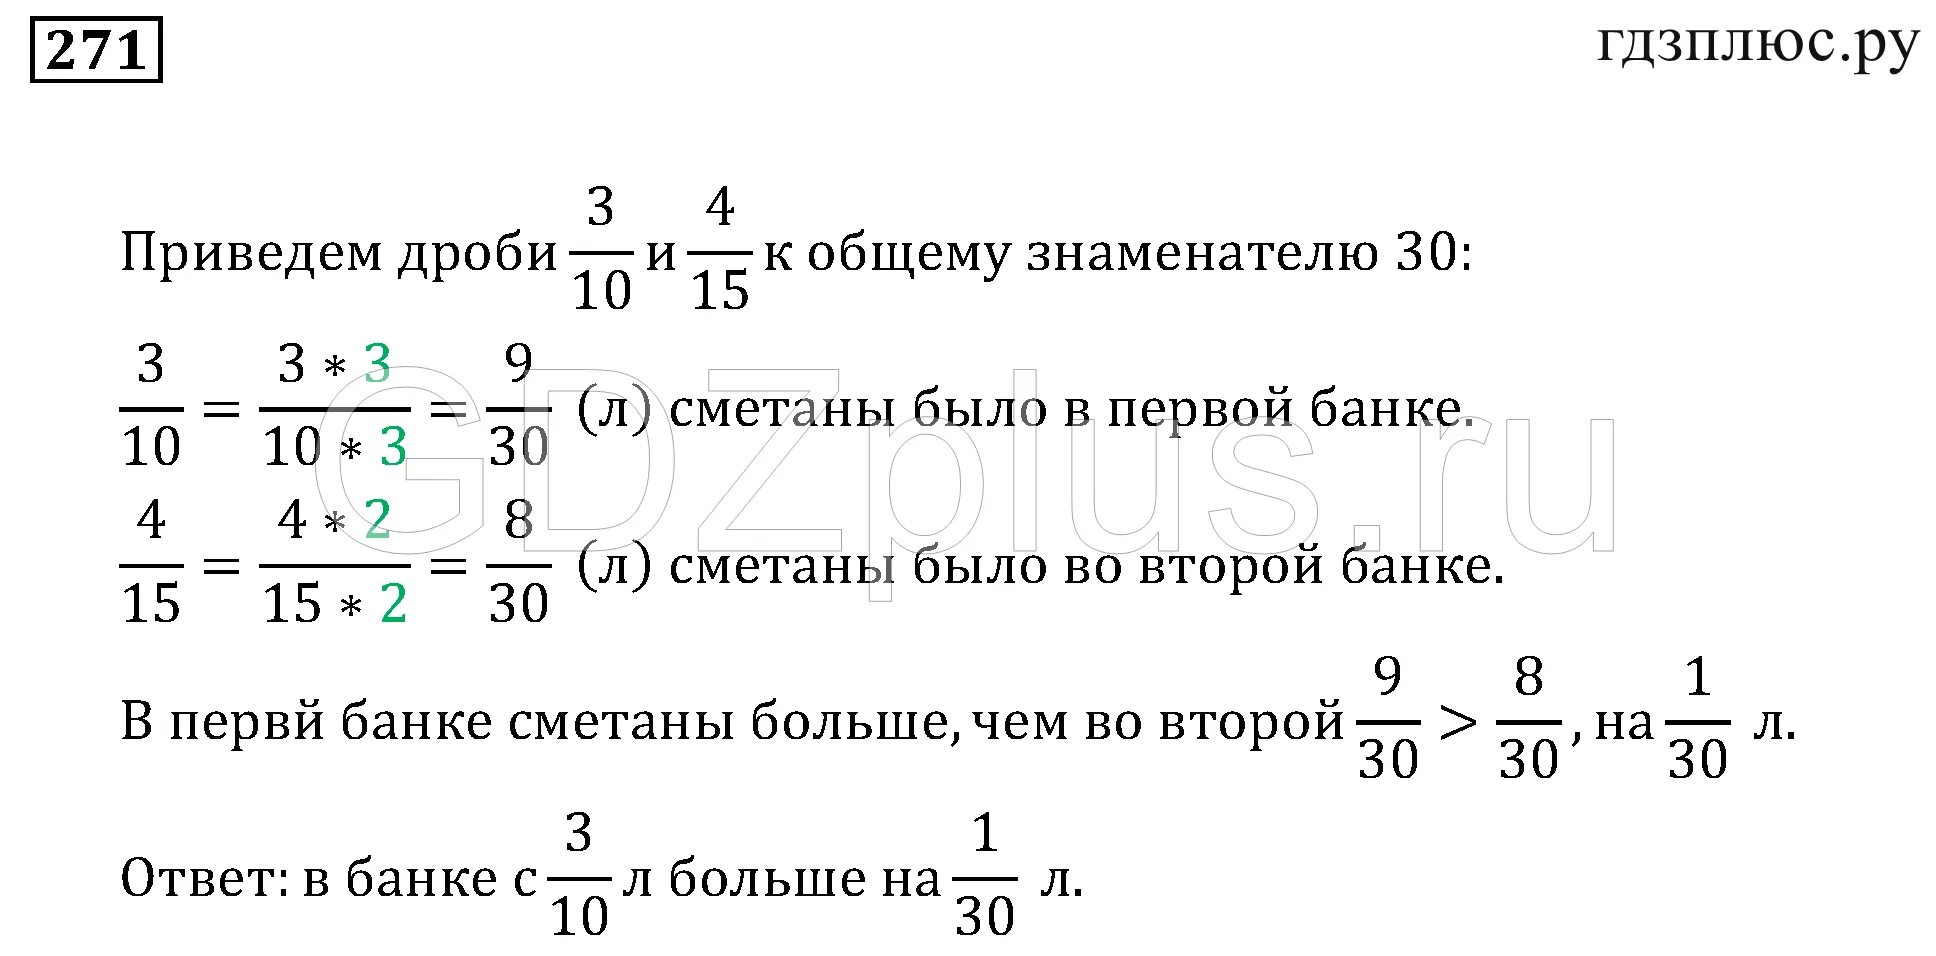 Уравнения 6 класс мерзляк с ответами. Тесты по математике 6 класс Мерзляк с ответами. Диаграммы 6 класс математика Мерзляк задания. Математика 6 класс примеры с ответами и решением Мерзляк.